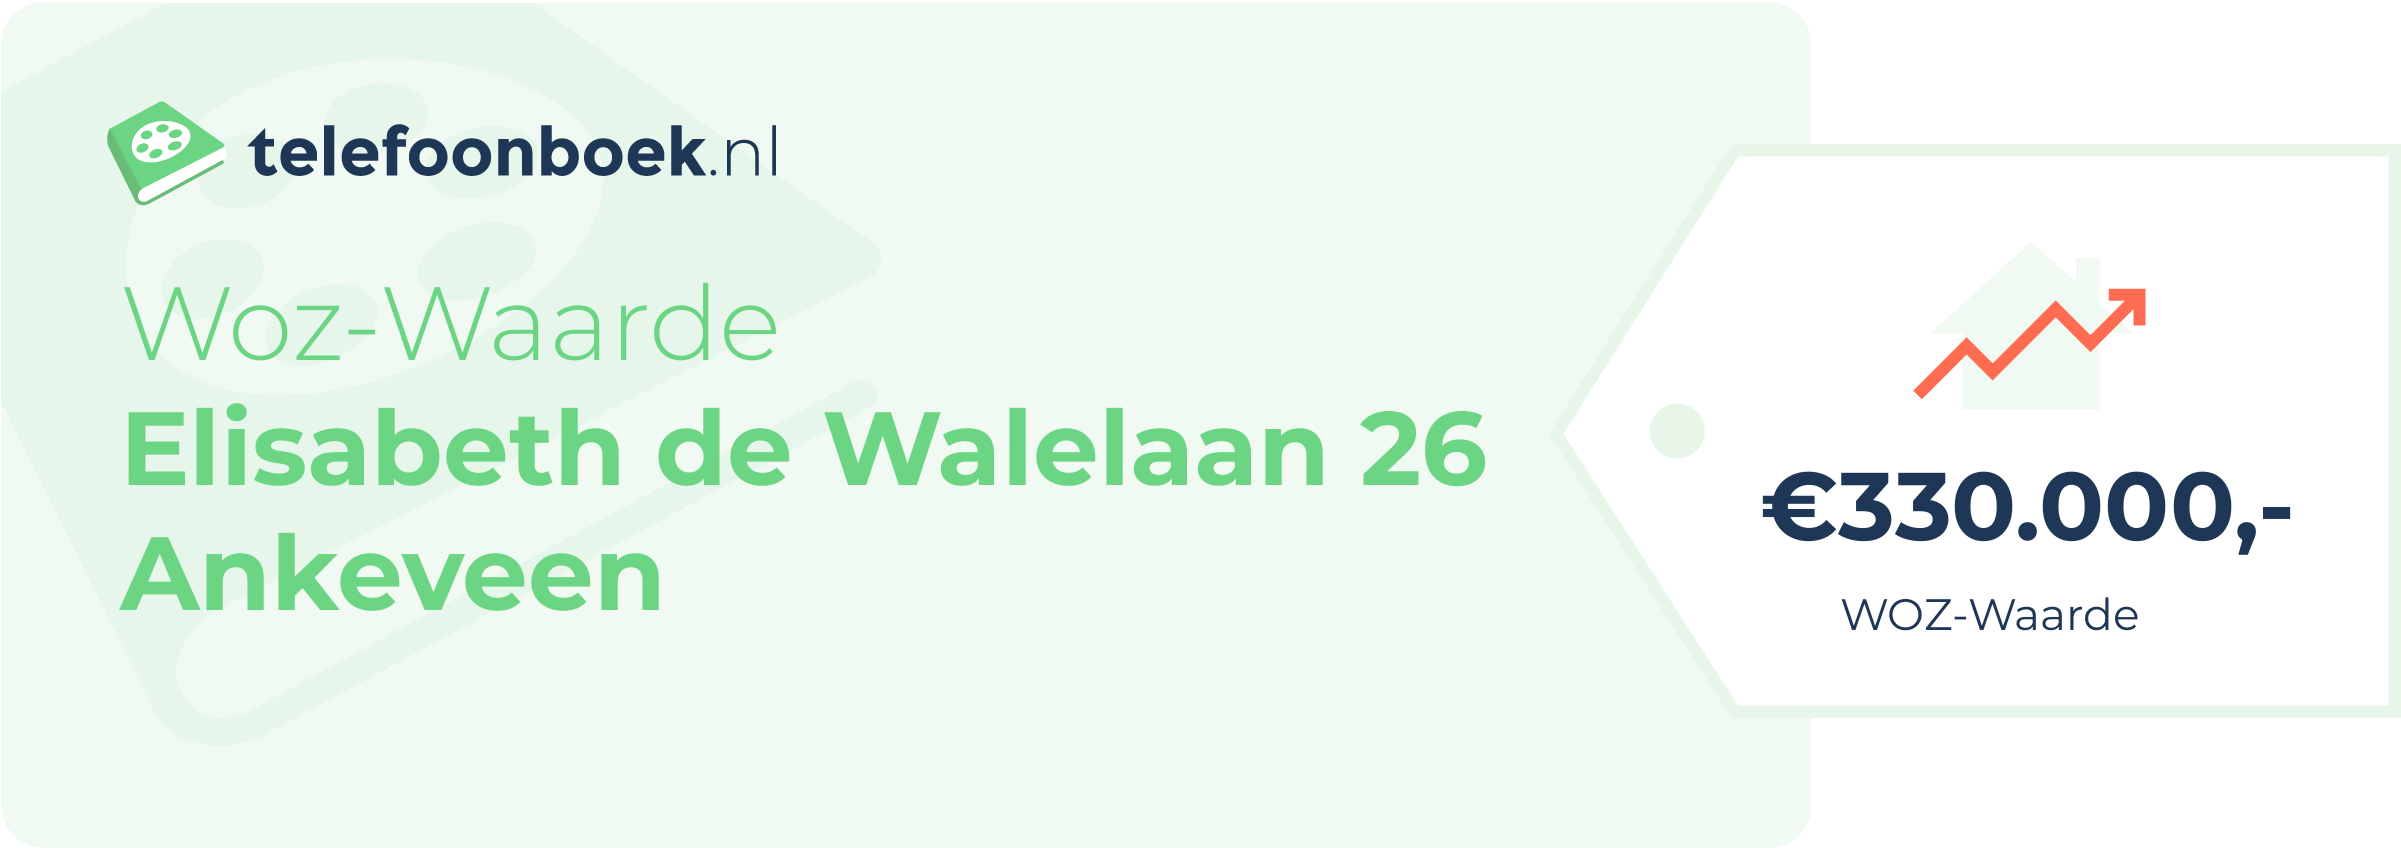 WOZ-waarde Elisabeth De Walelaan 26 Ankeveen